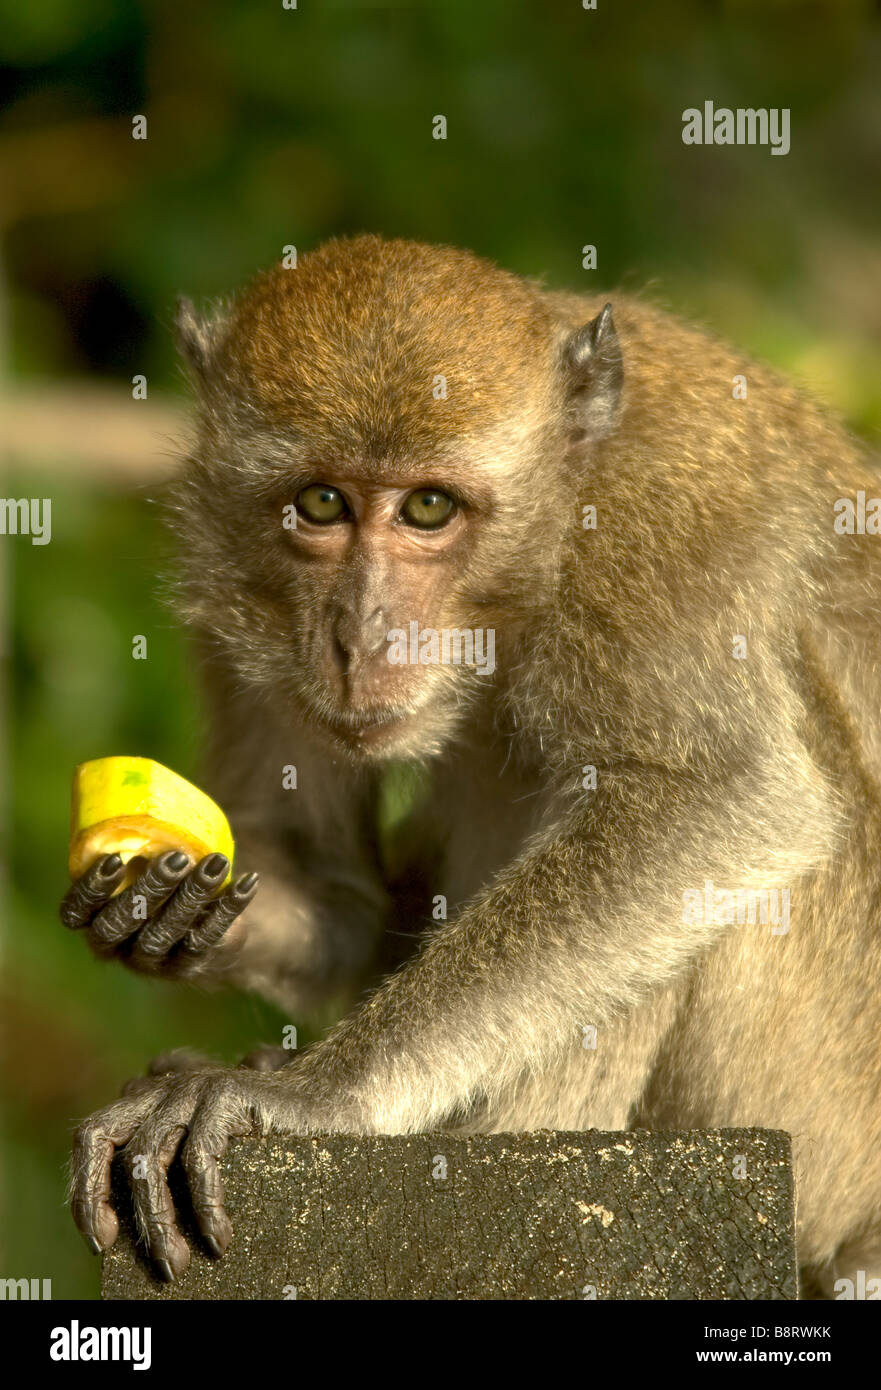 Imagen de retrato de un mono macaco con un pedazo de plátano mirando directamente a la cámara. Foto de stock